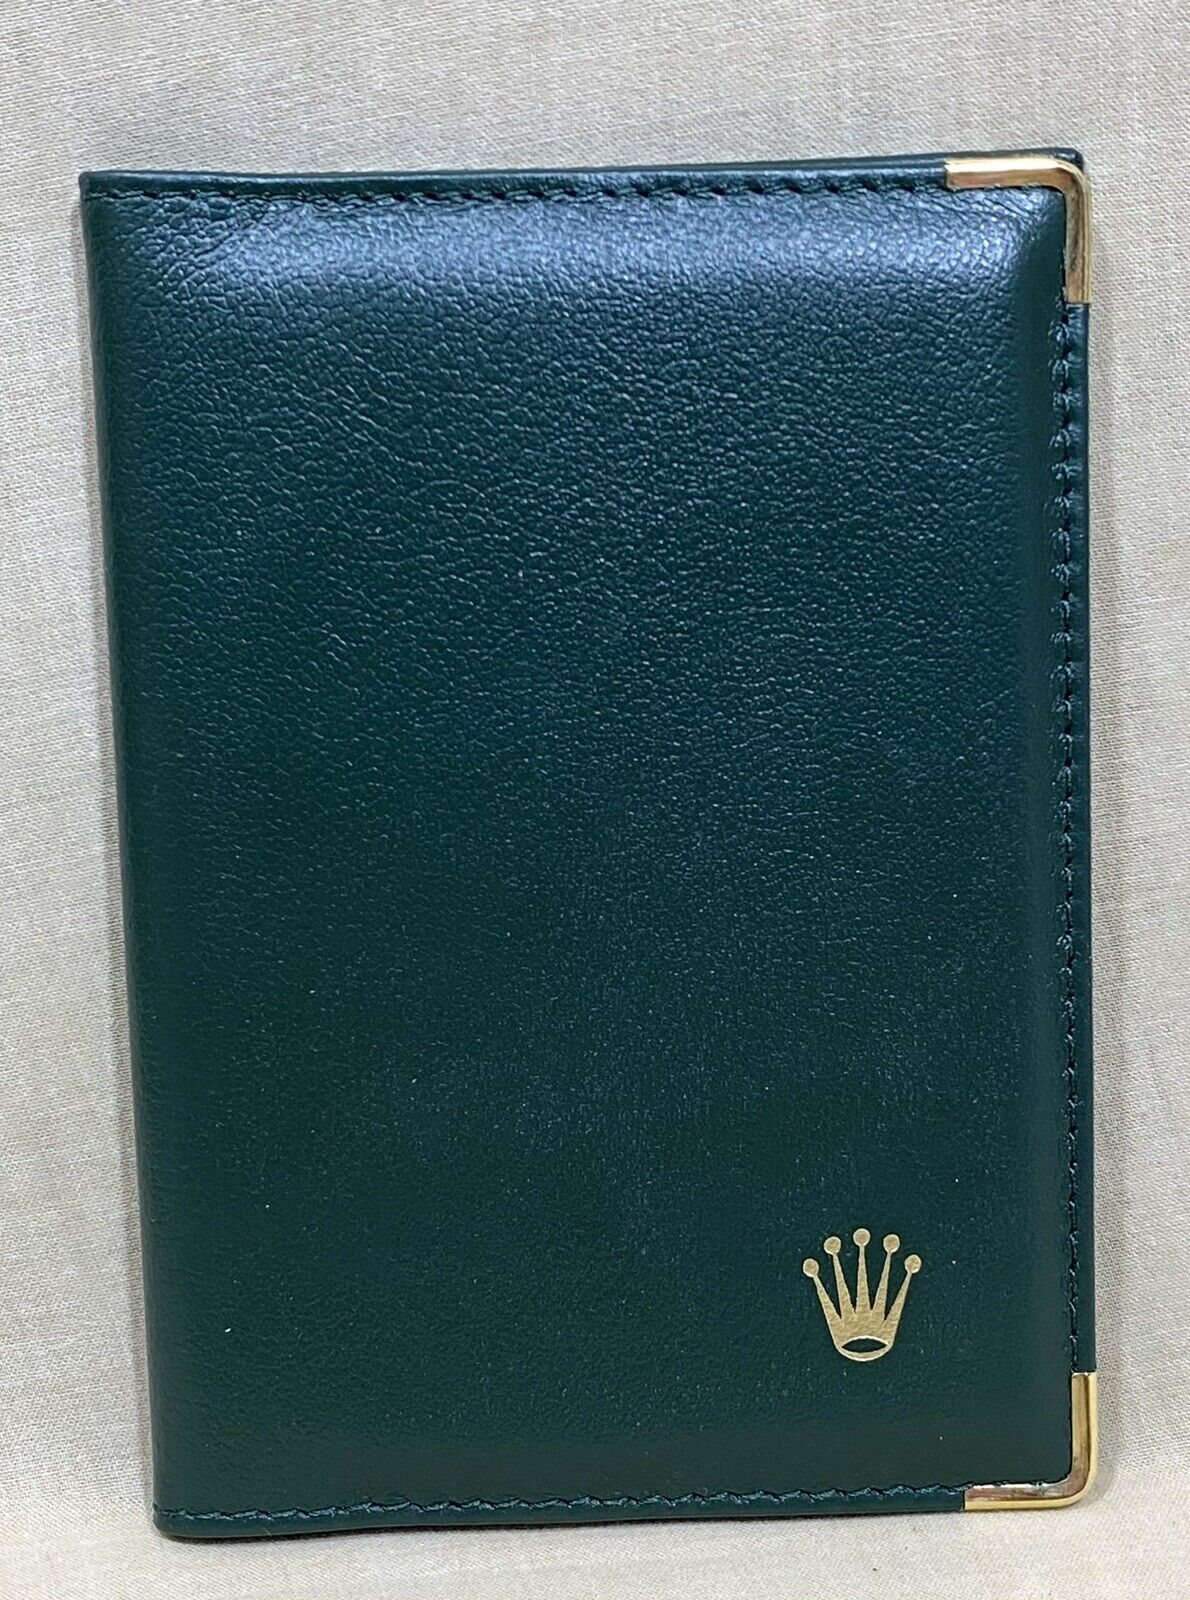 ROLEX Leather Wallet Passport Document Holder 0068.08.05 Daytona Submariner GMT